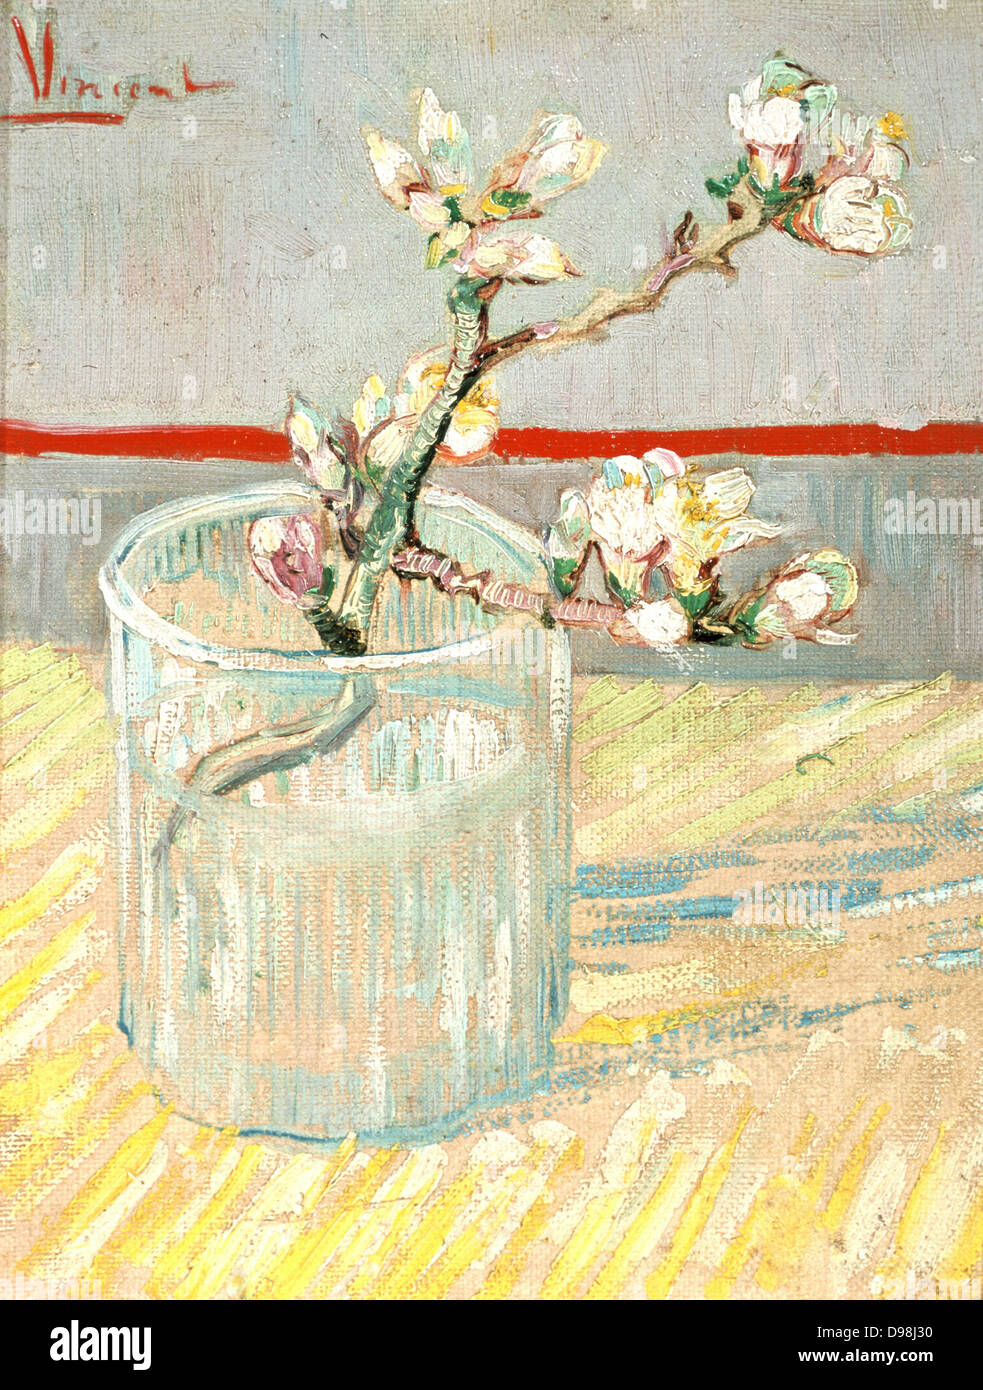 Branche de l'amandier en fleurs dans un verre', 1888. Huile sur toile. Vincent Willem van Gogh (1853-1890) peintre postimpressionniste néerlandais. Banque D'Images